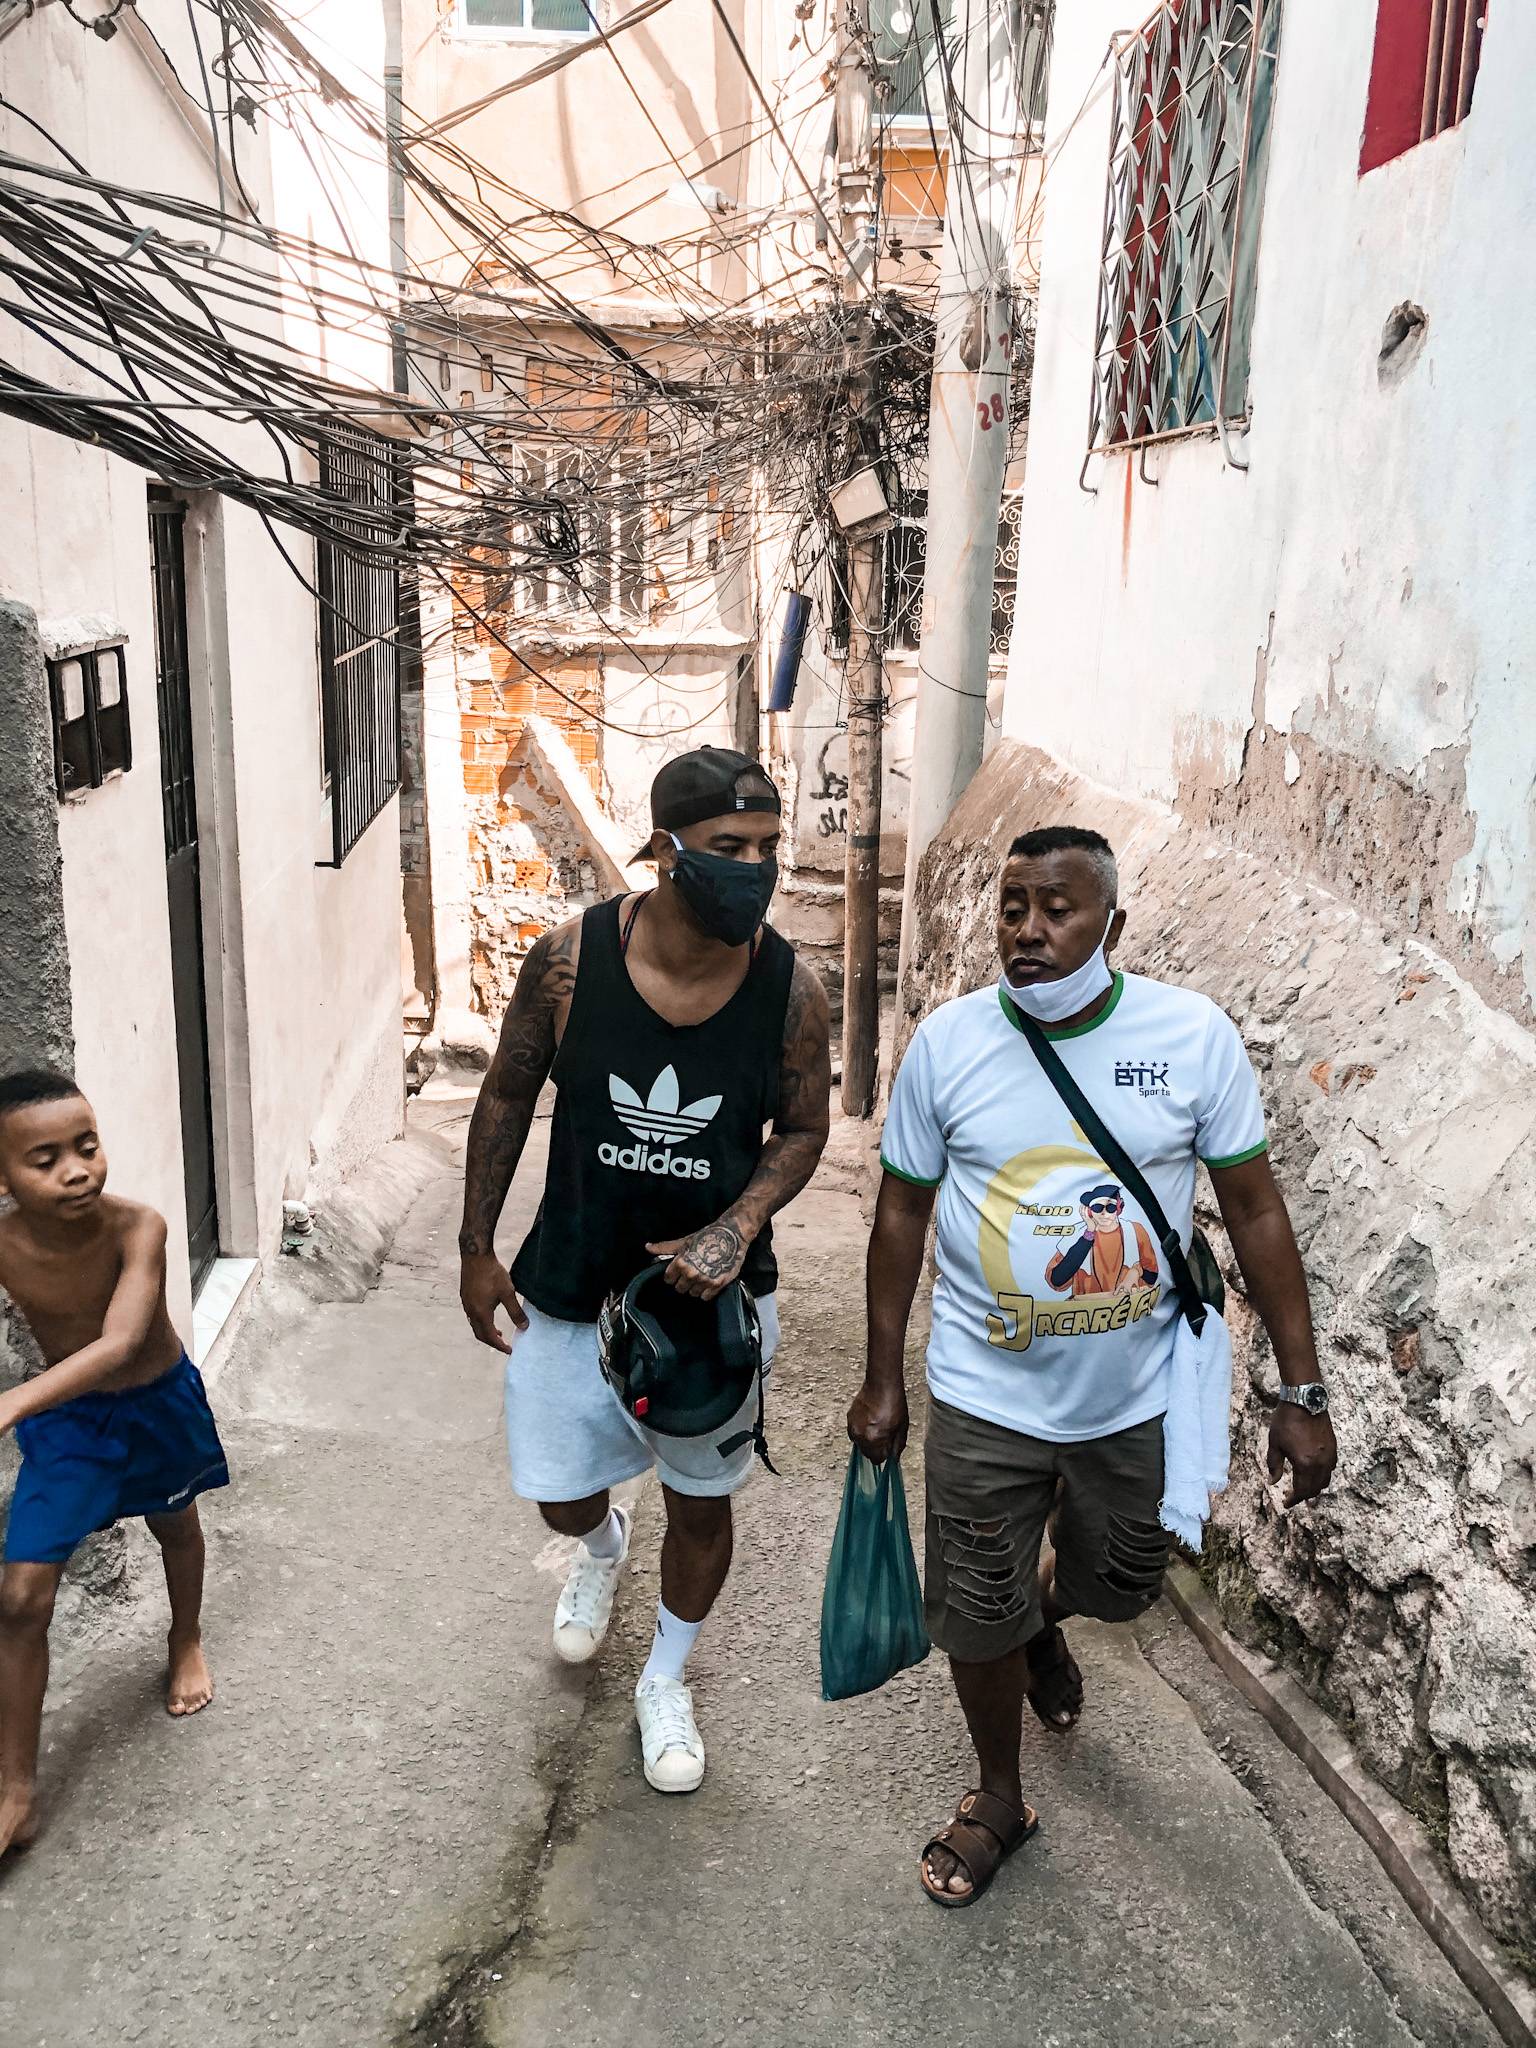 Jacarezinho A History Of The Blackest Favela In Rio De Janeiro Rioonwatch